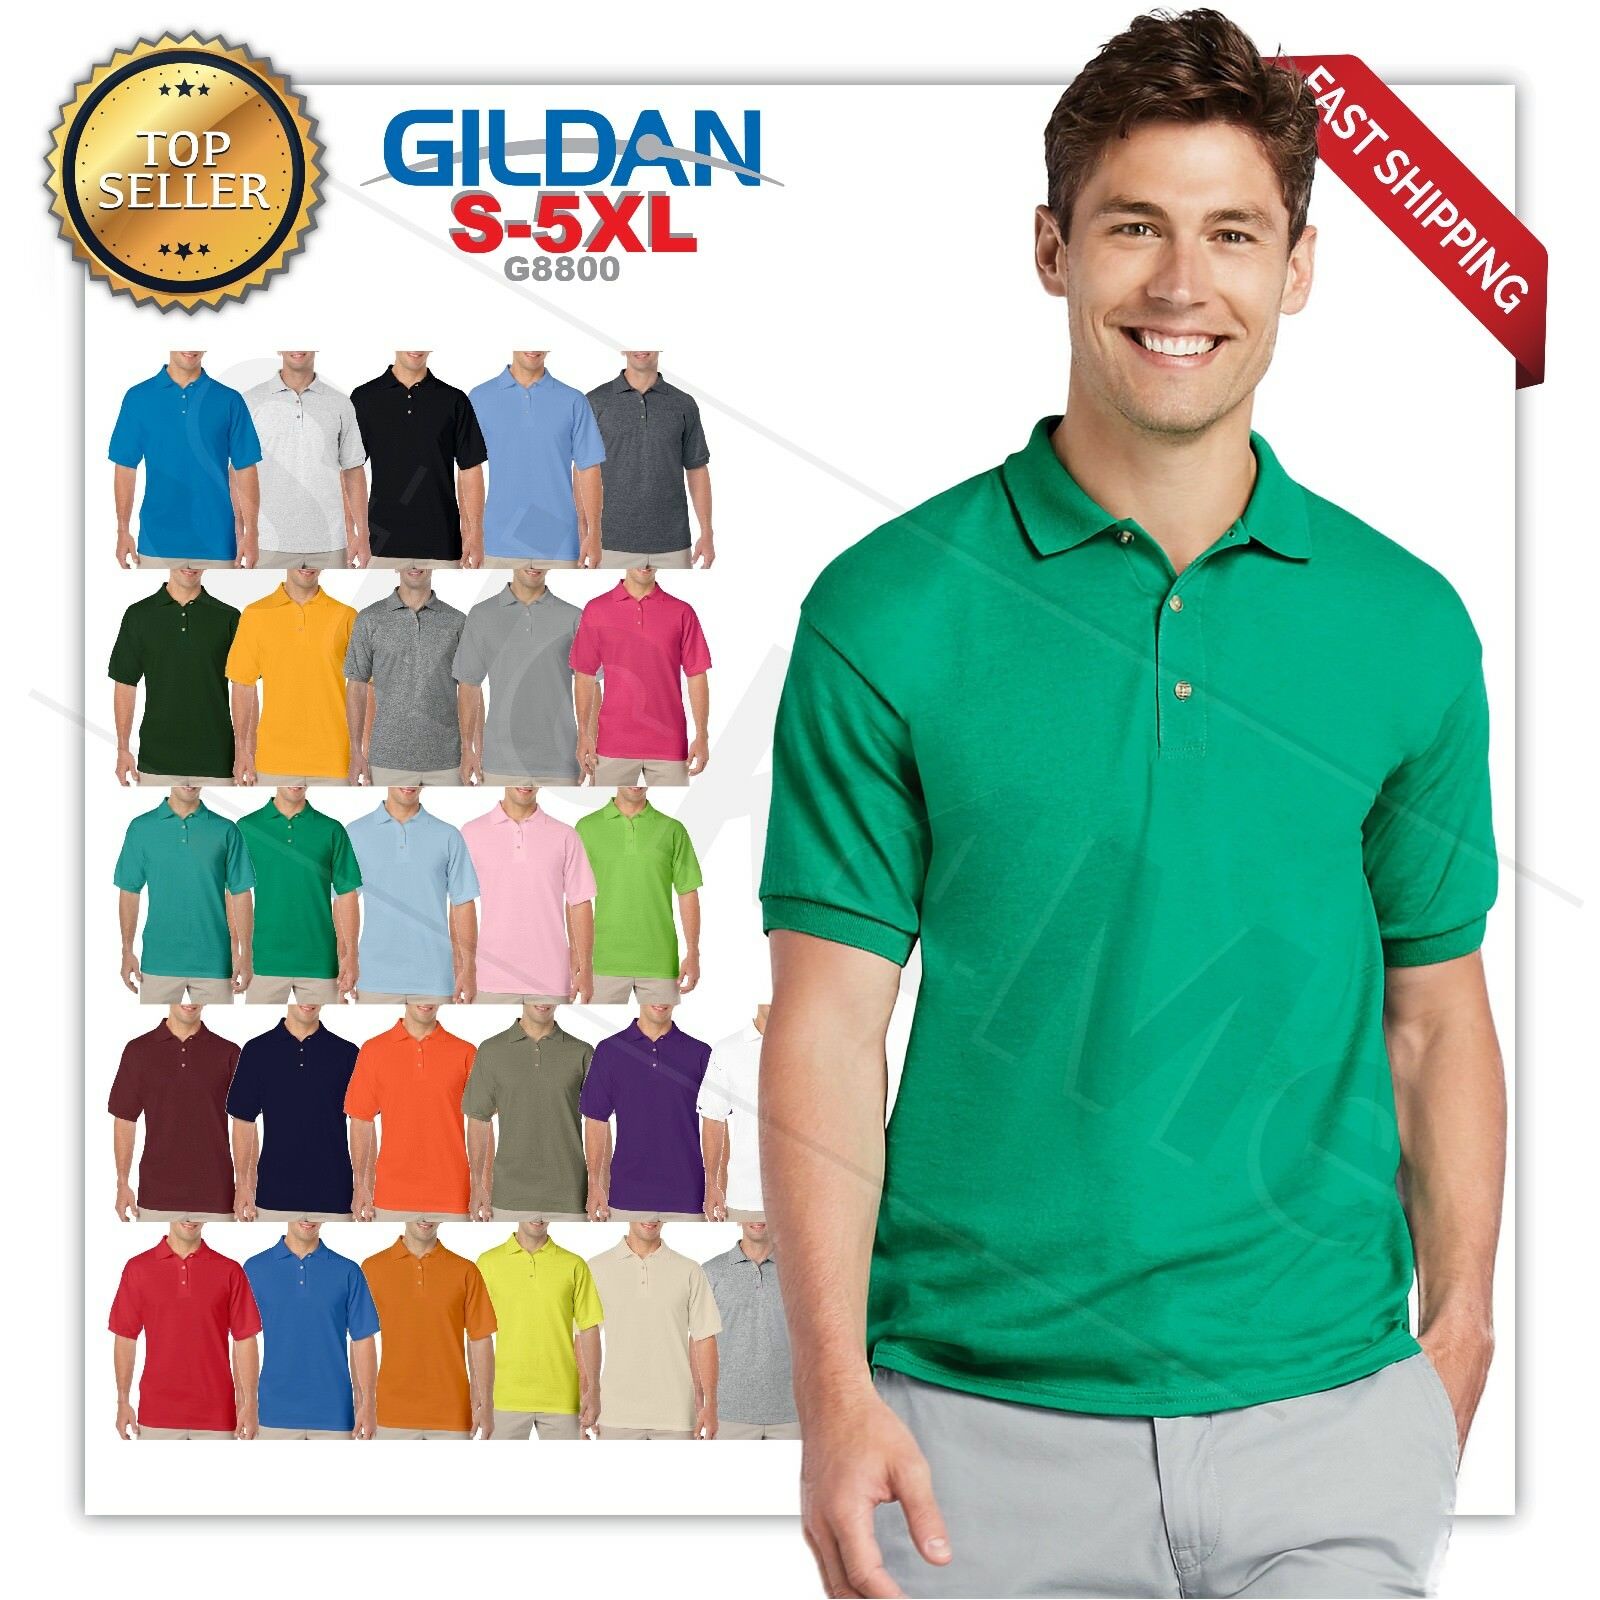 Gildan Dryblend Mens Polo Golf Sport Shirt Jersey T-shirt 8800 Nwot Size S-5xl